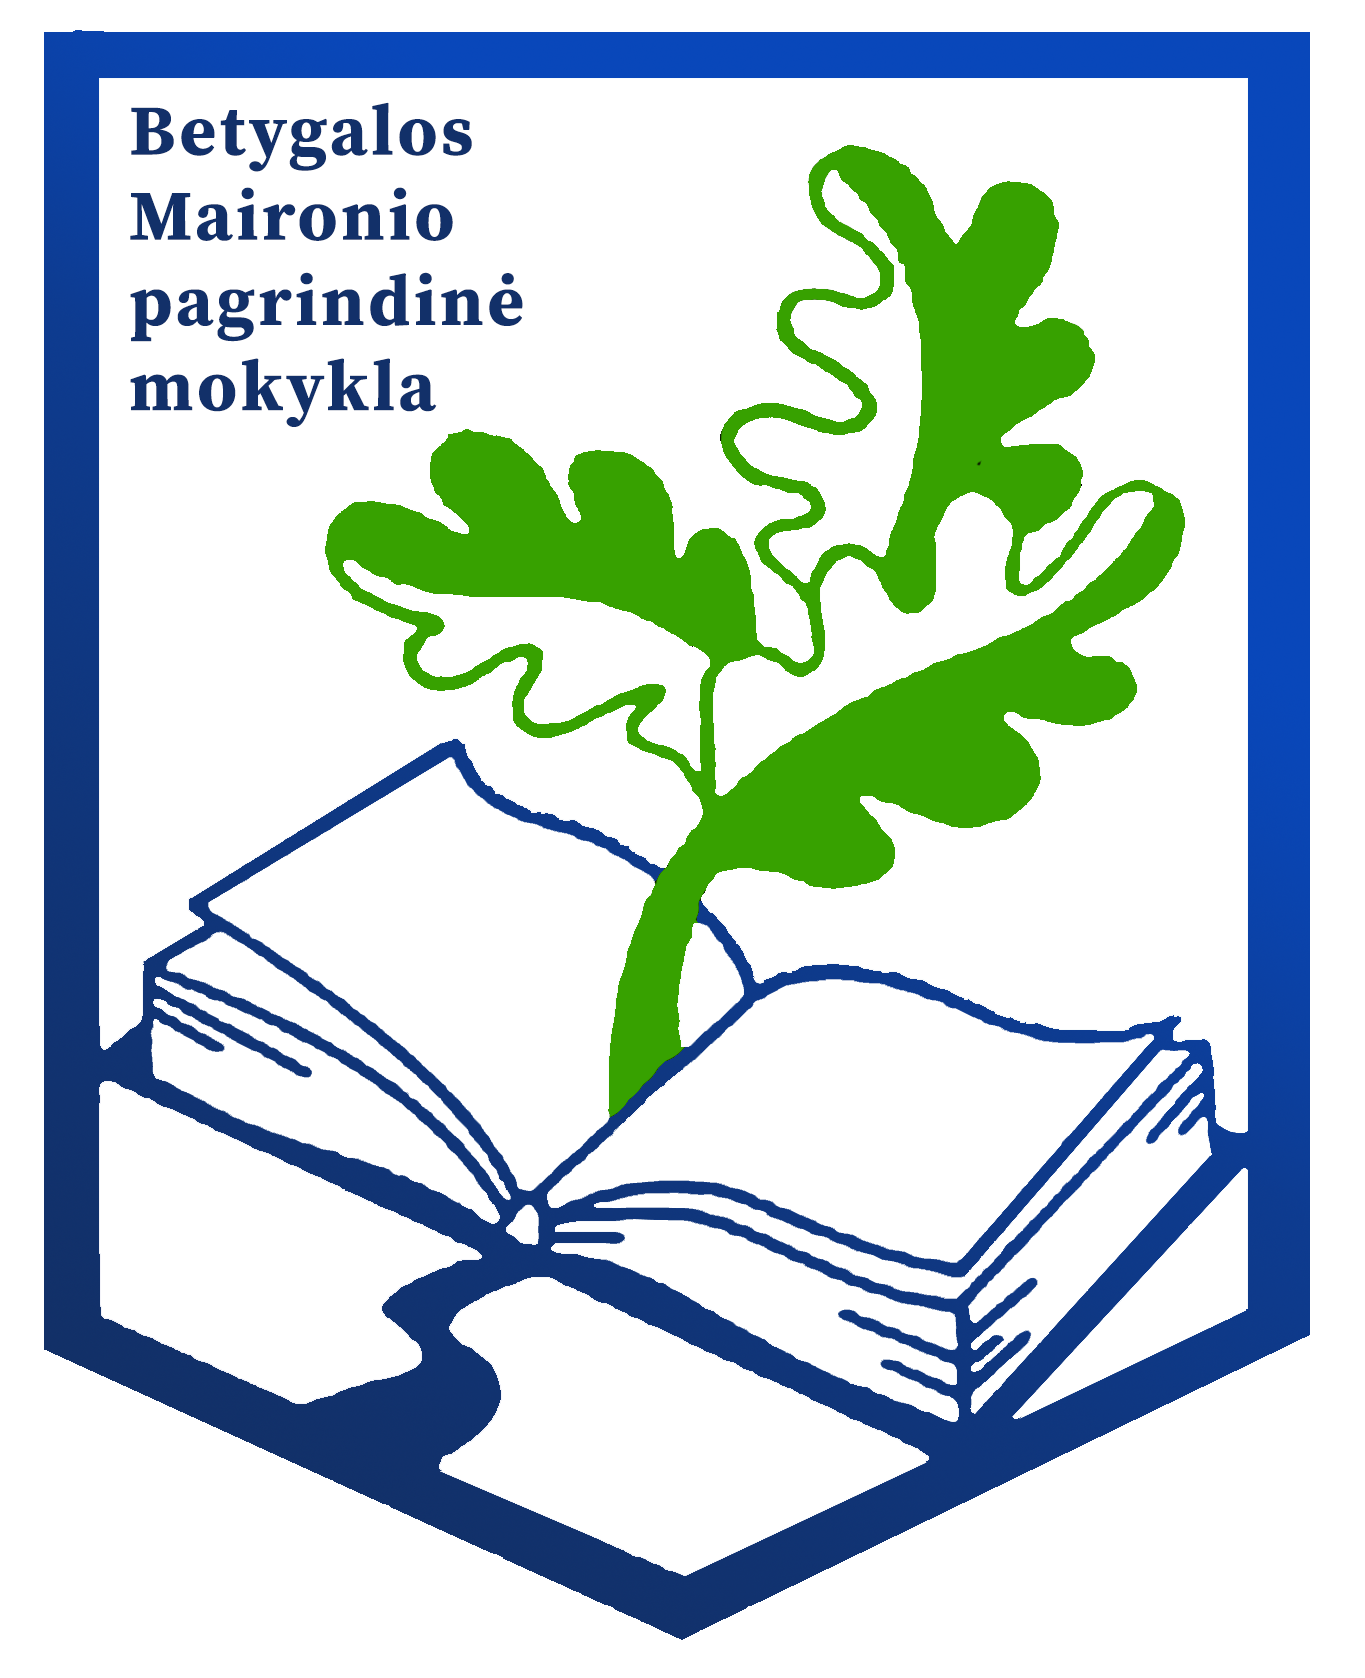 Betygalos Maironio pagrindinės mokyklos herbas